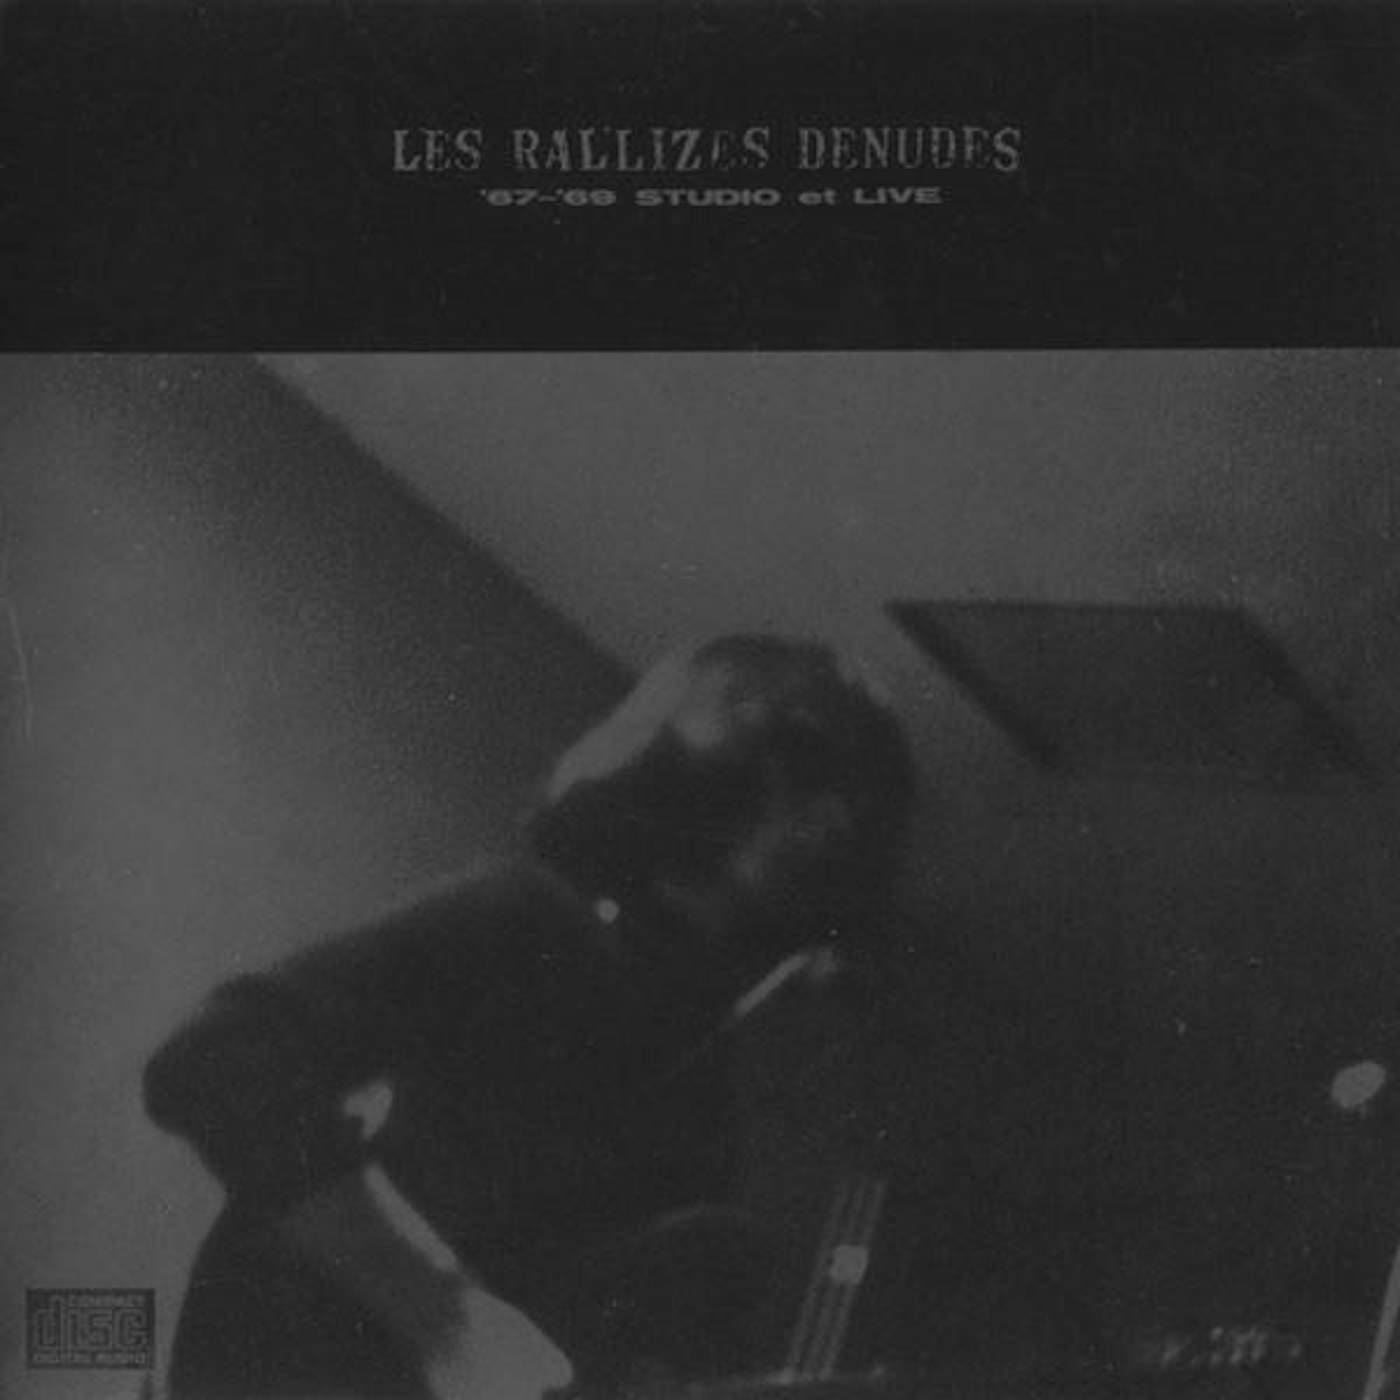 Les Rallizes Dénudés 67-'69 STUDIO ET LIVE CD